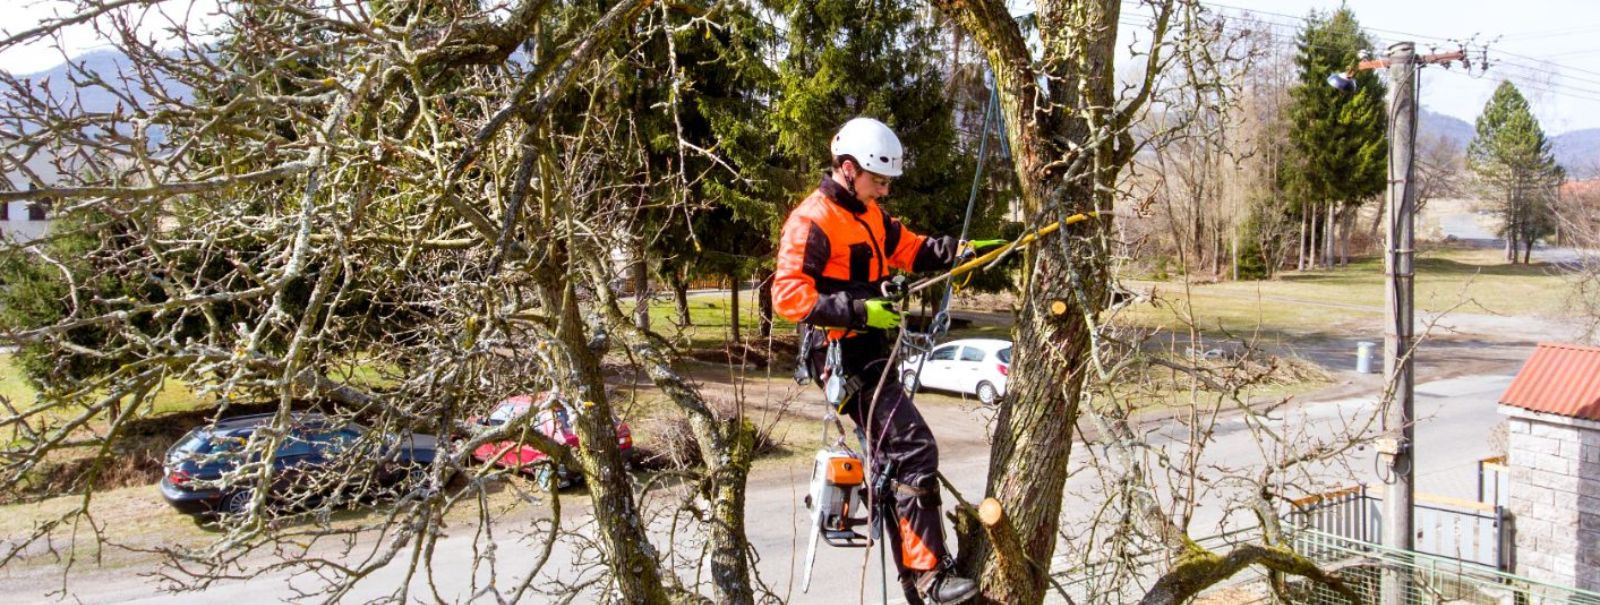 Ohtlike puude langetamine on ülioluline ülesanne, mis nõuab eriteadmisi, oskusi ja ennekõike ohutust. Selleks, et tagada turvaline ja tõhus puude eemaldamine, k